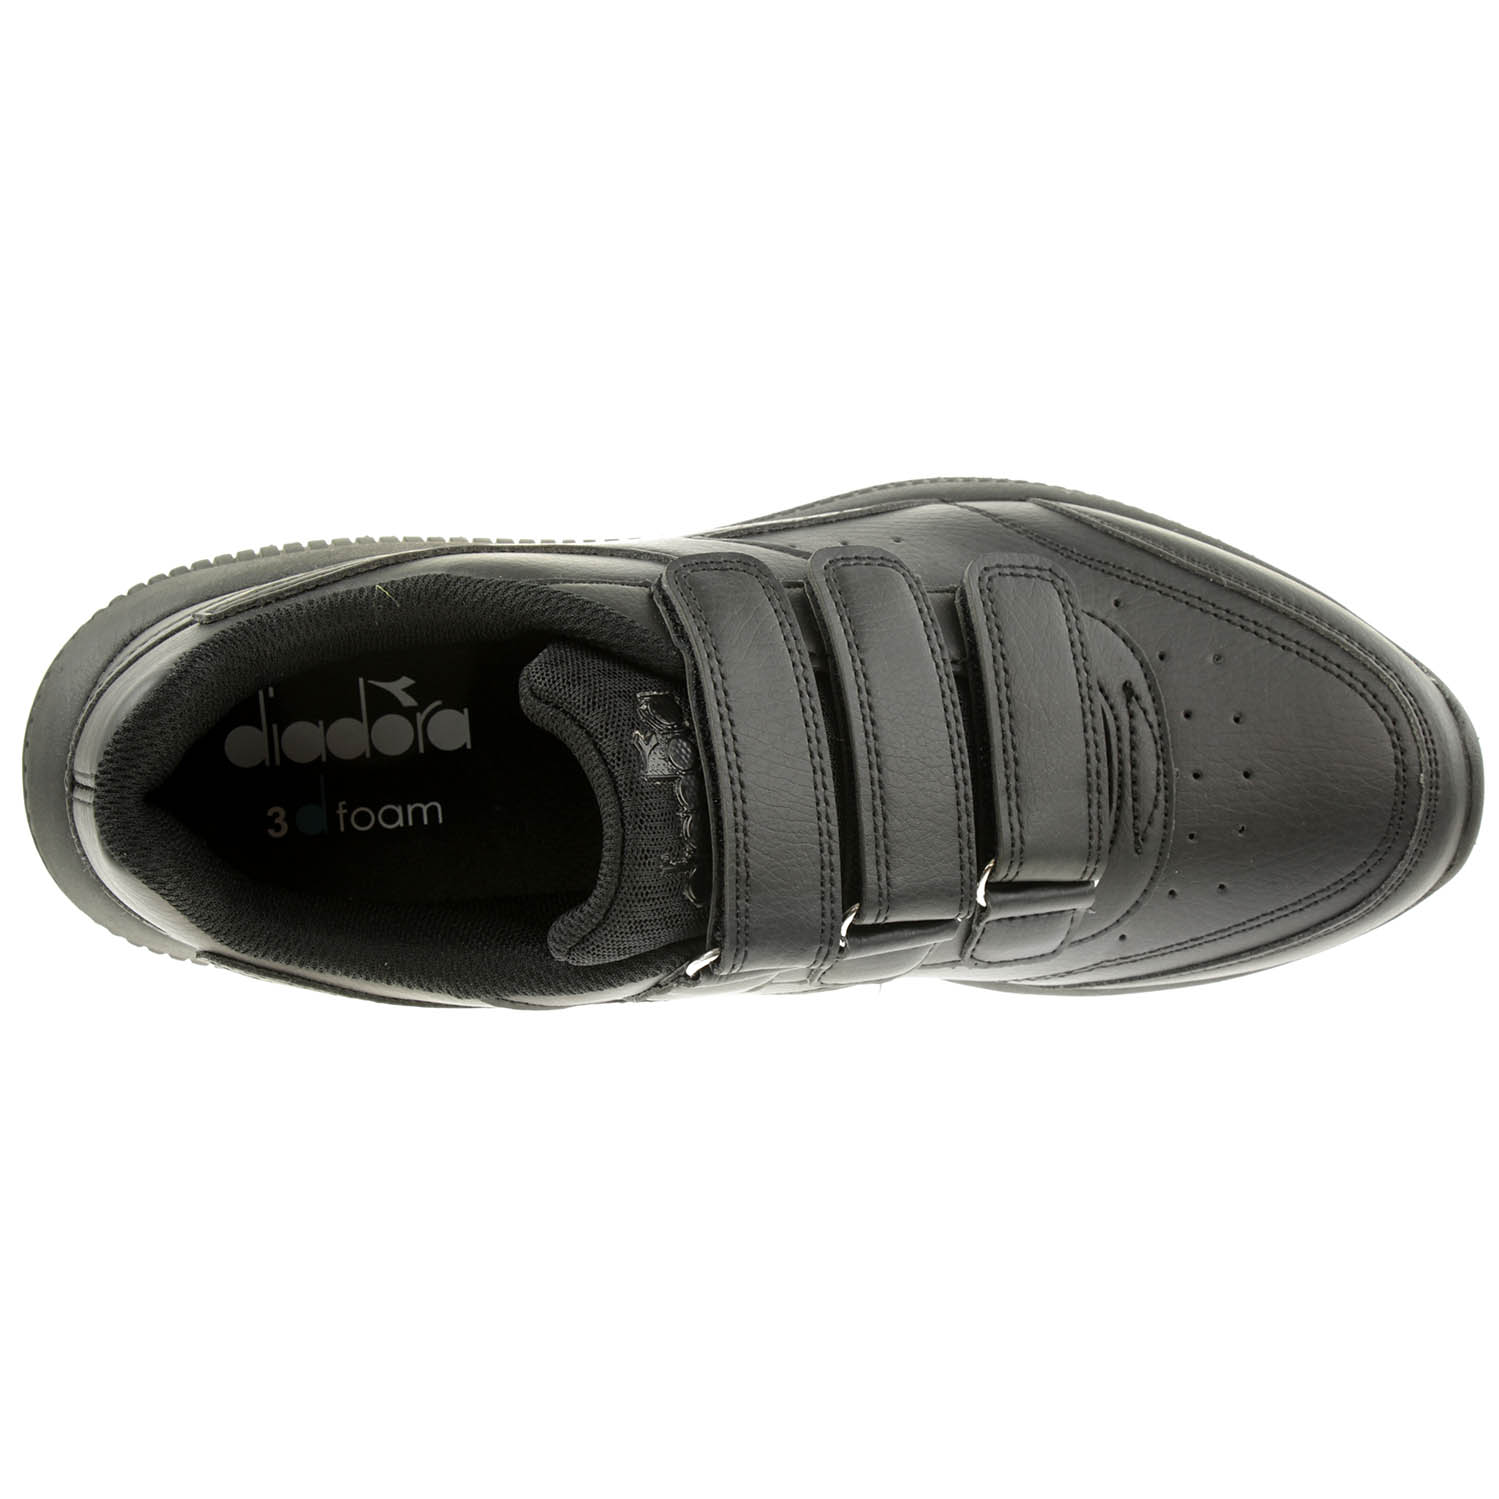 Diadora Eagle 4 SL V Unisex Sneaker Turnschuh Klettverschluss 101.177496 01 C0200 Schwarz